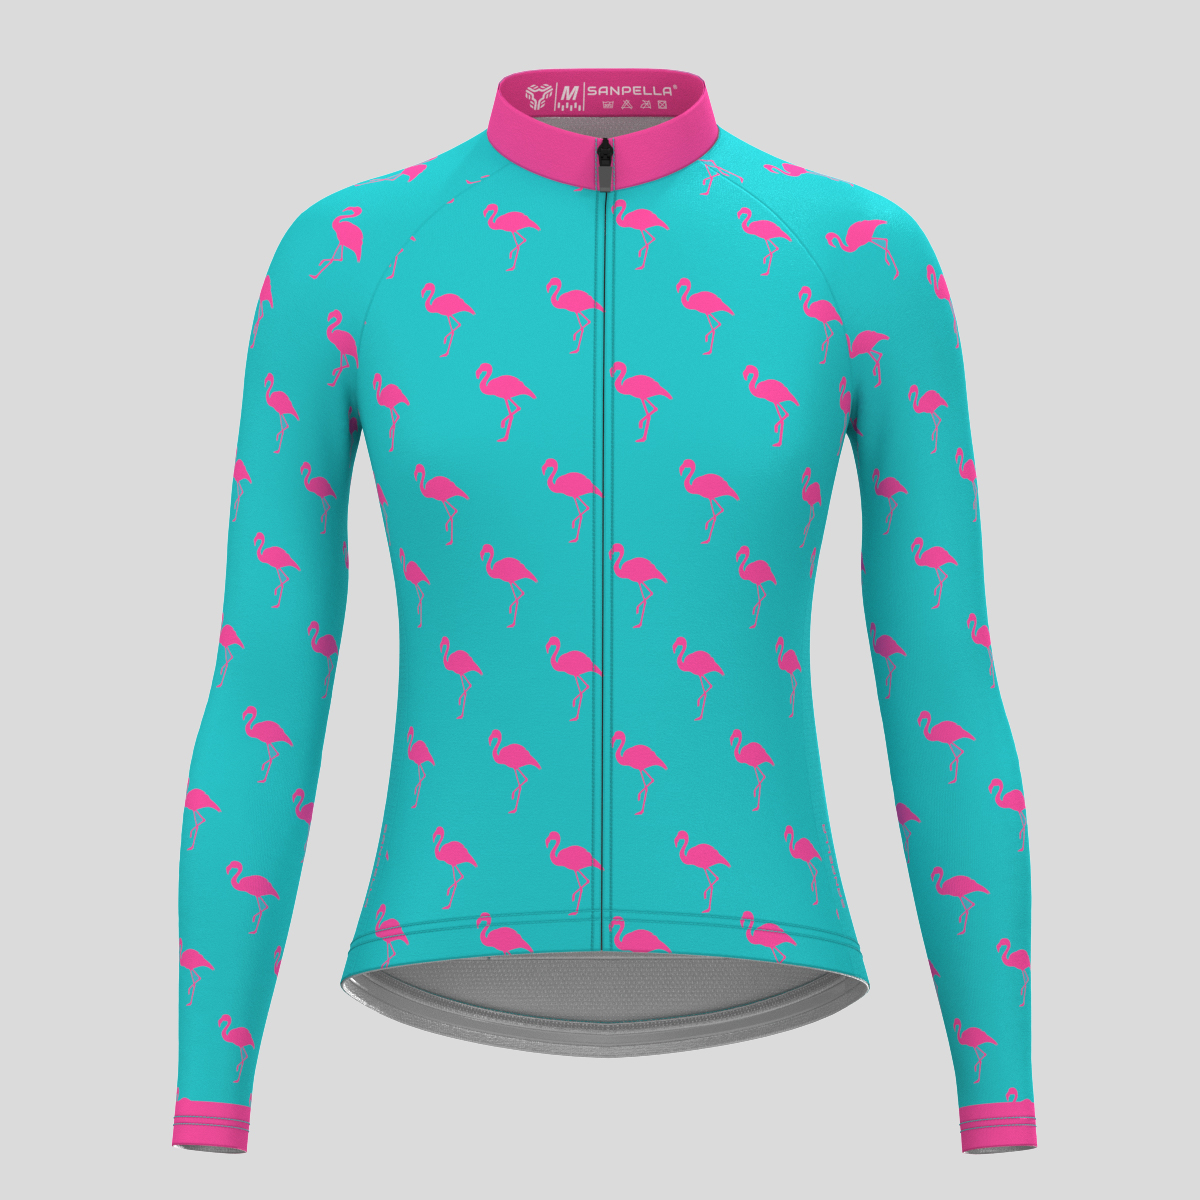 Flamingo Women's LS Cycling Jersey - Pink/Blue